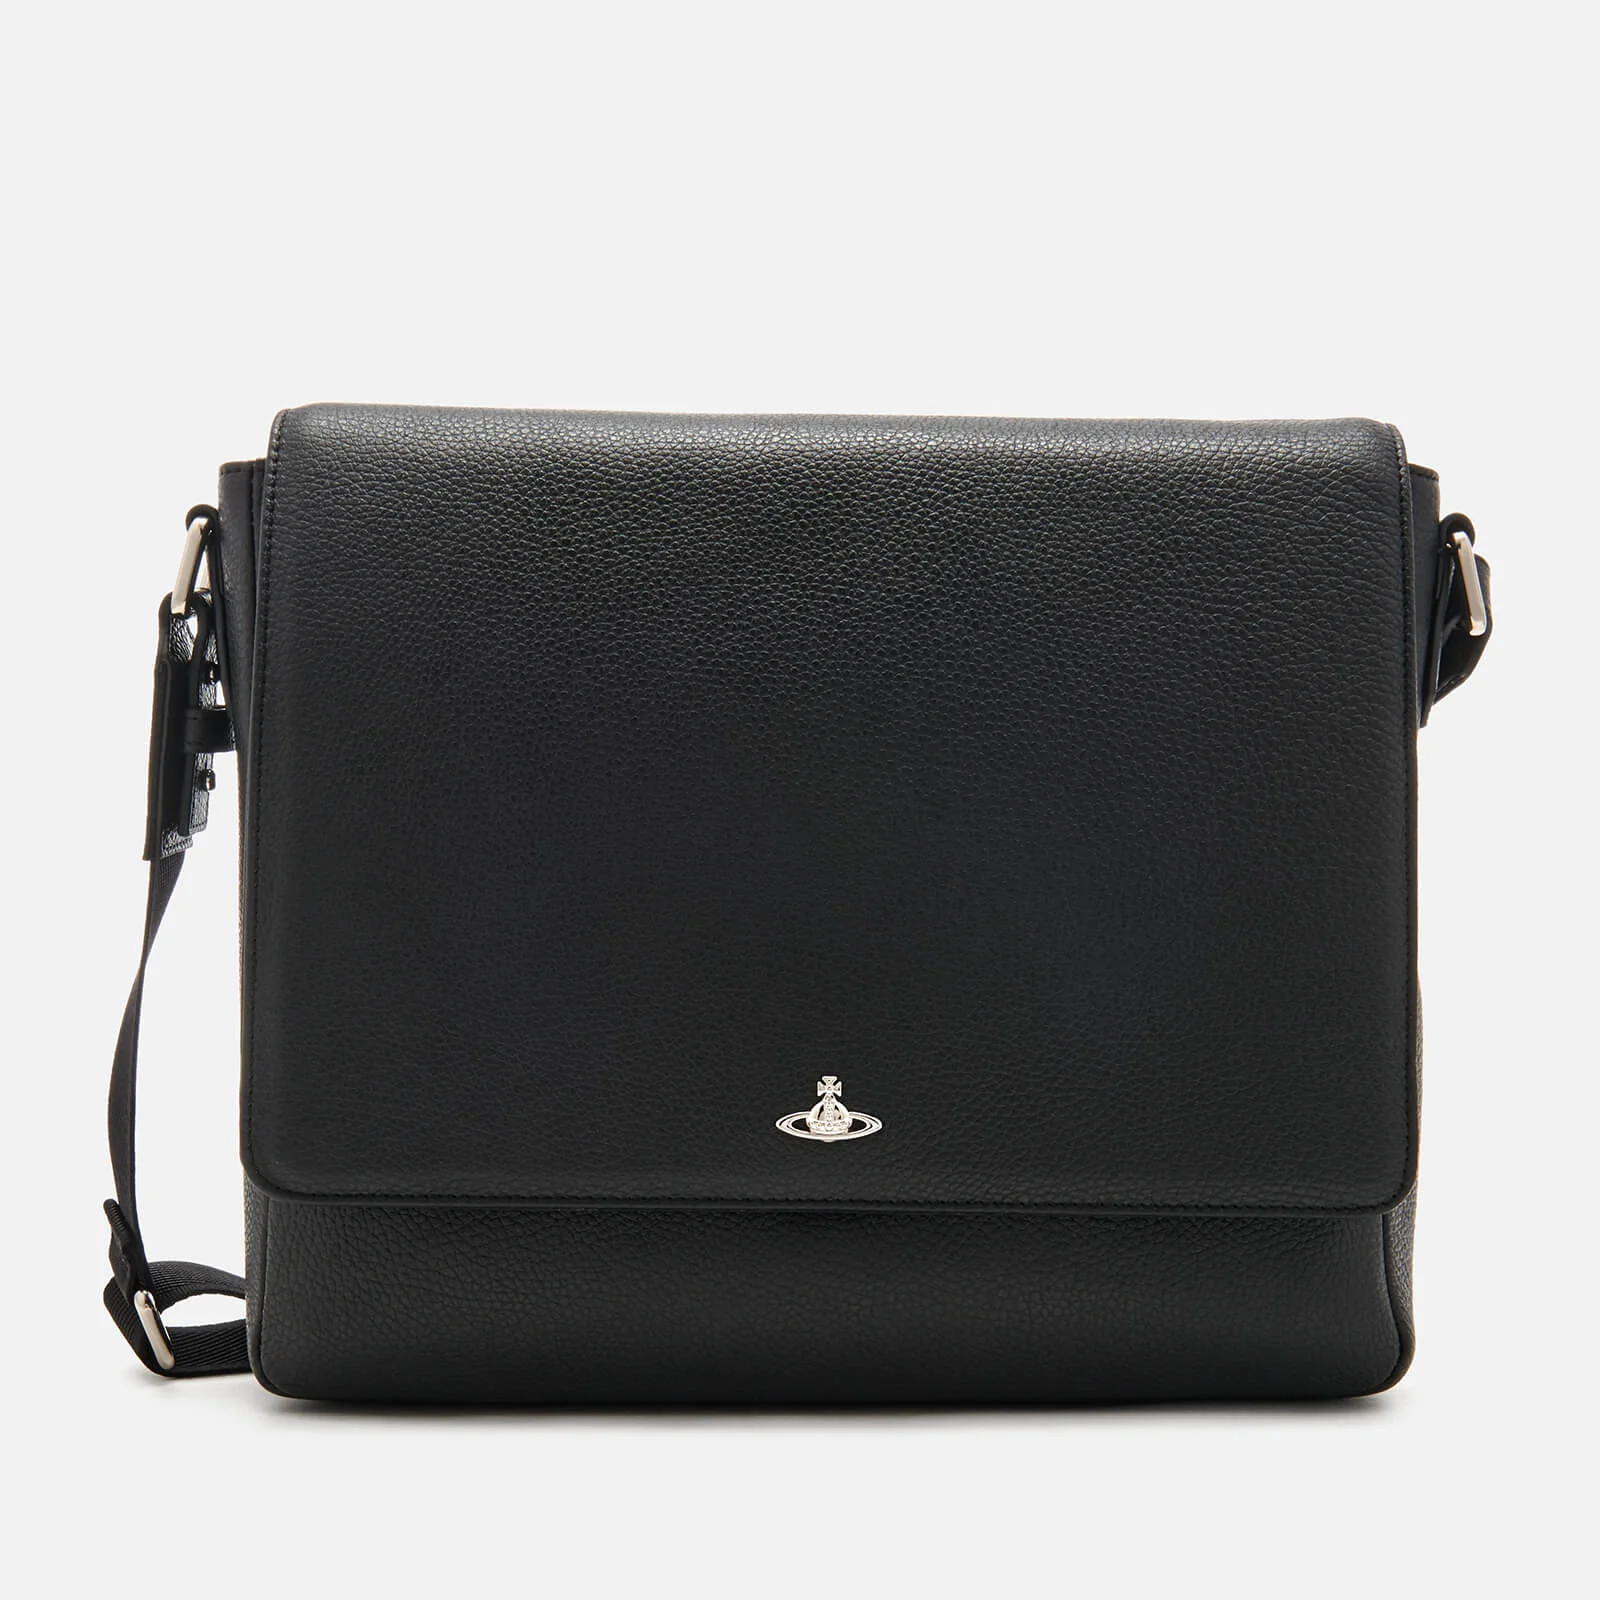 Vivienne Westwood Men's Milano Messenger Bag - Black Image 1